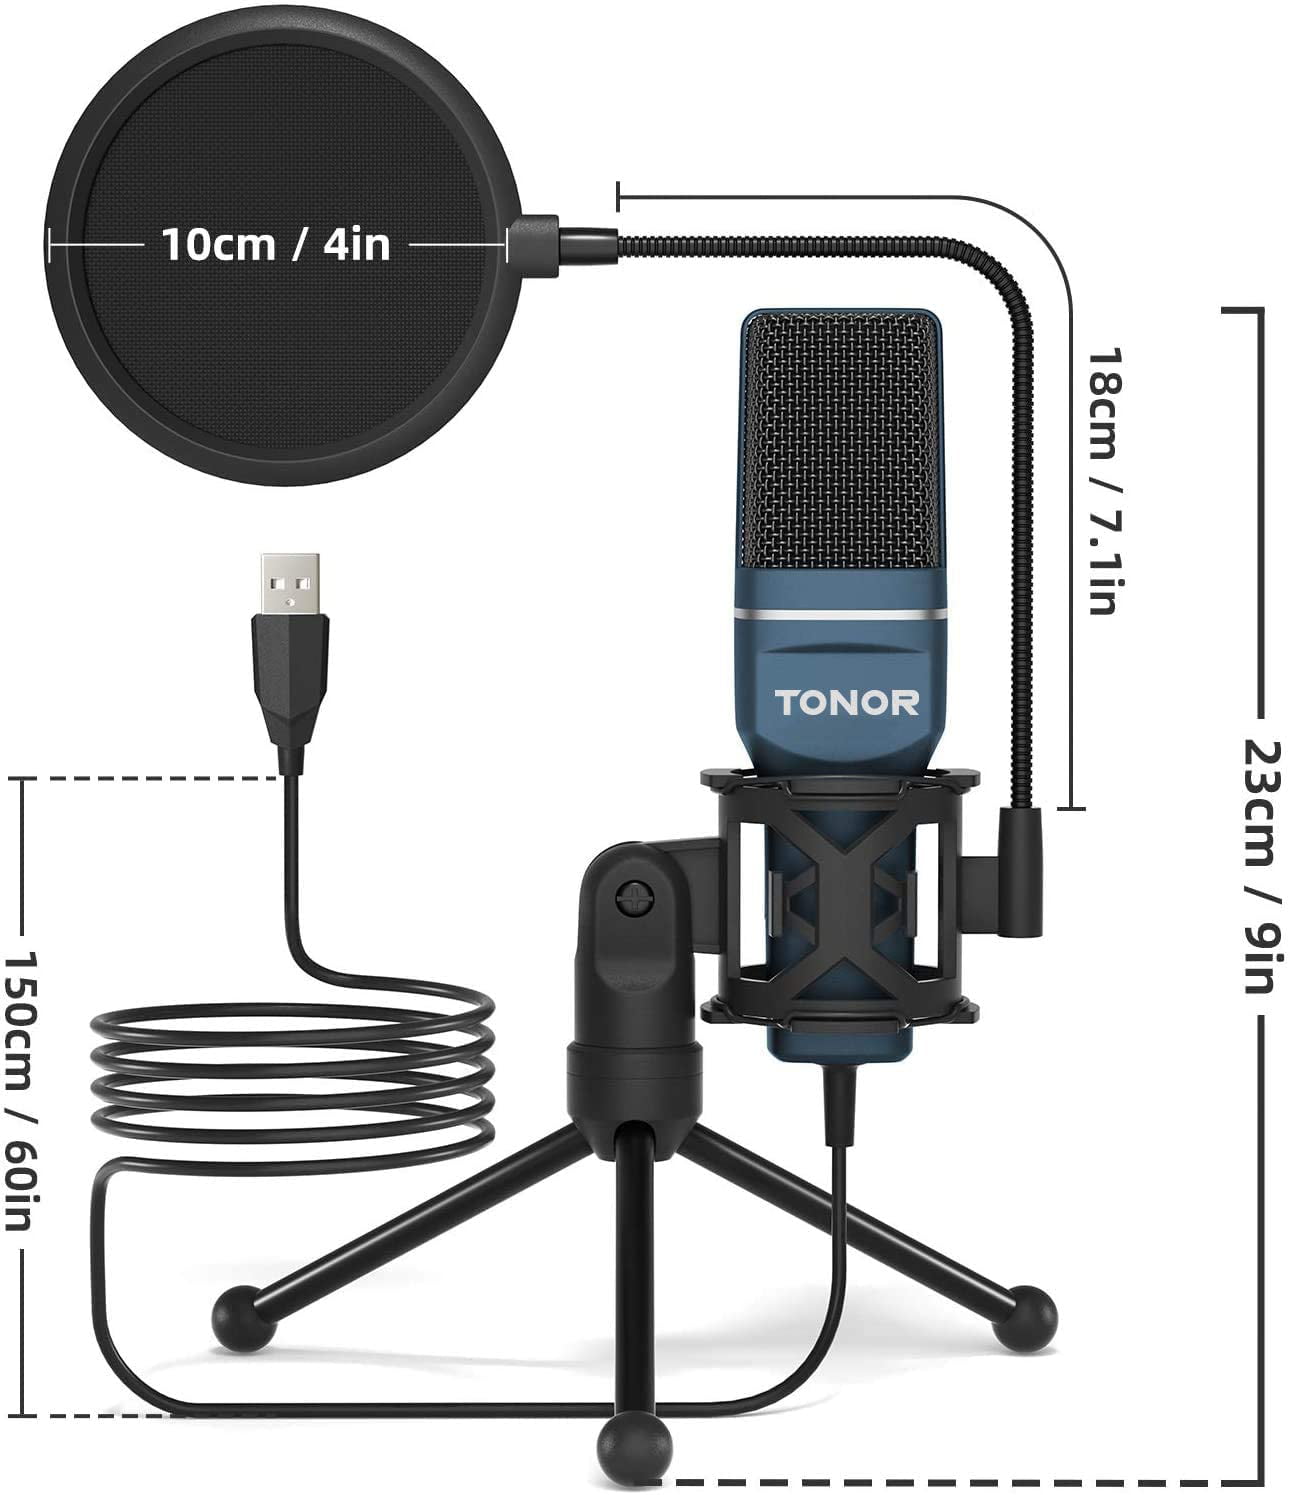 TONOR USB-mikrofon, njurkarakteristik, kondensator, PC-mikrofon med stativ,  popfilter, mikrofonspindel för streaming, podcasting, voice-over, Twitch